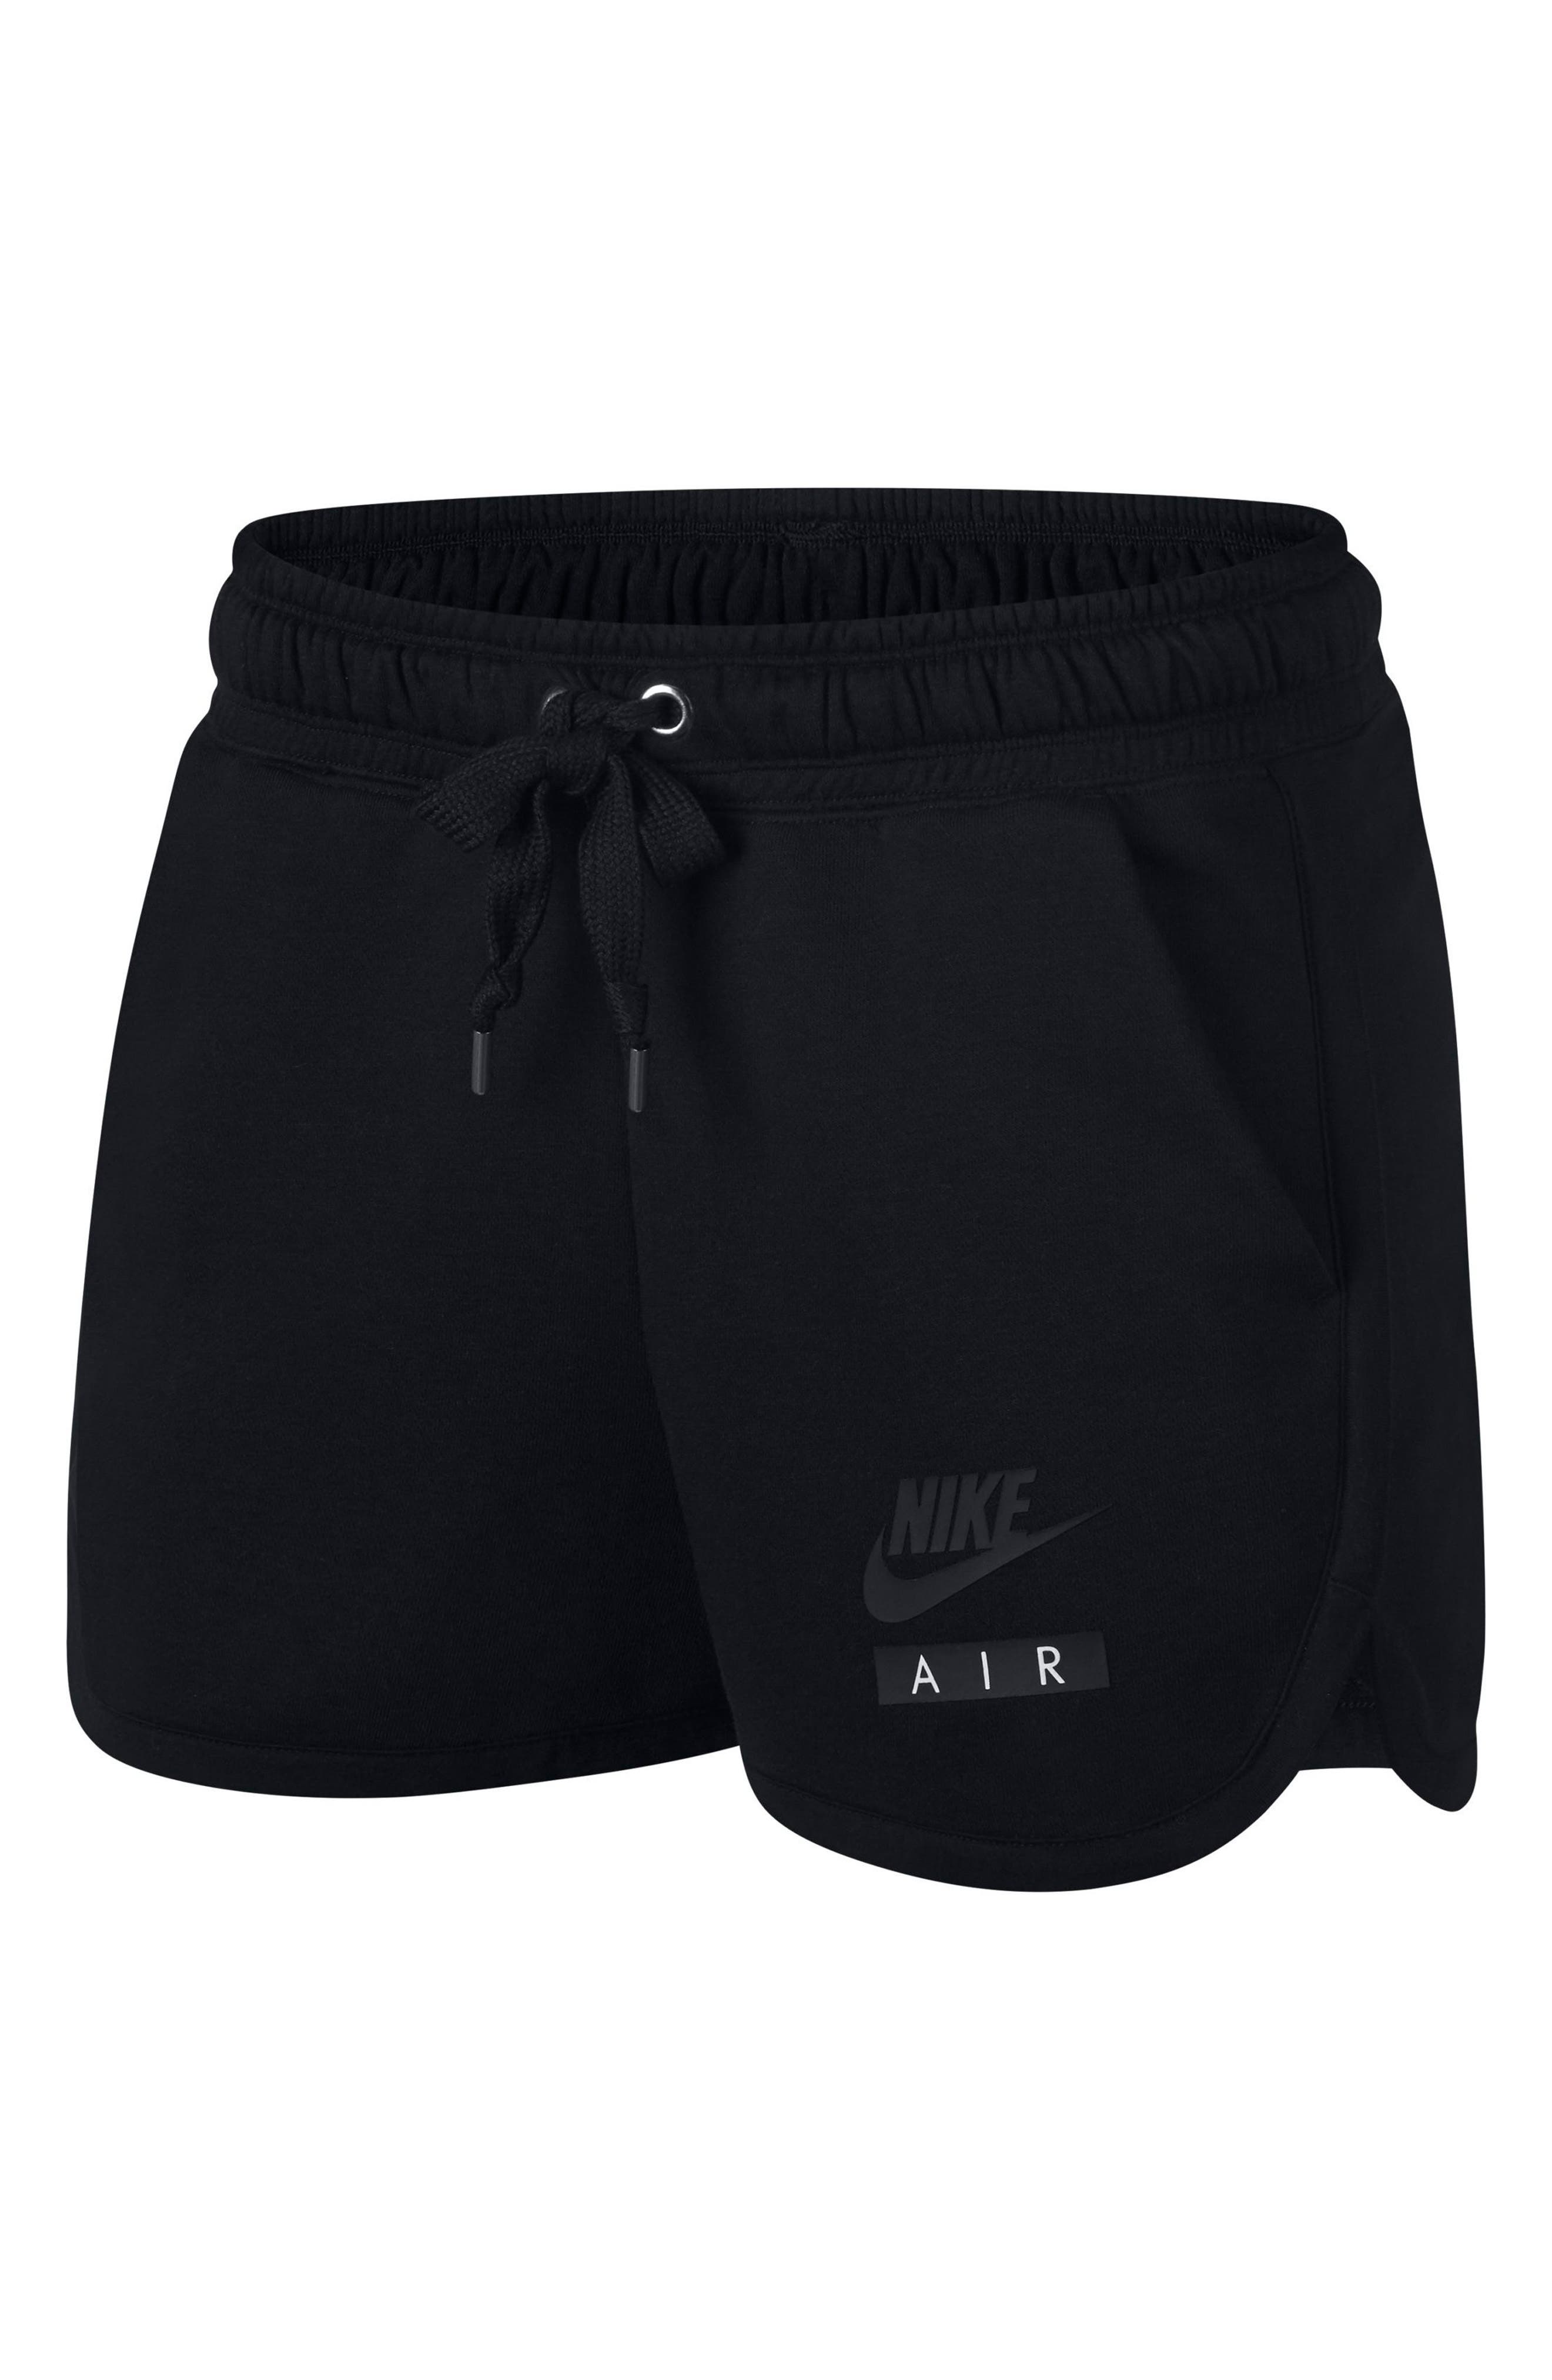 nike women's terry shorts